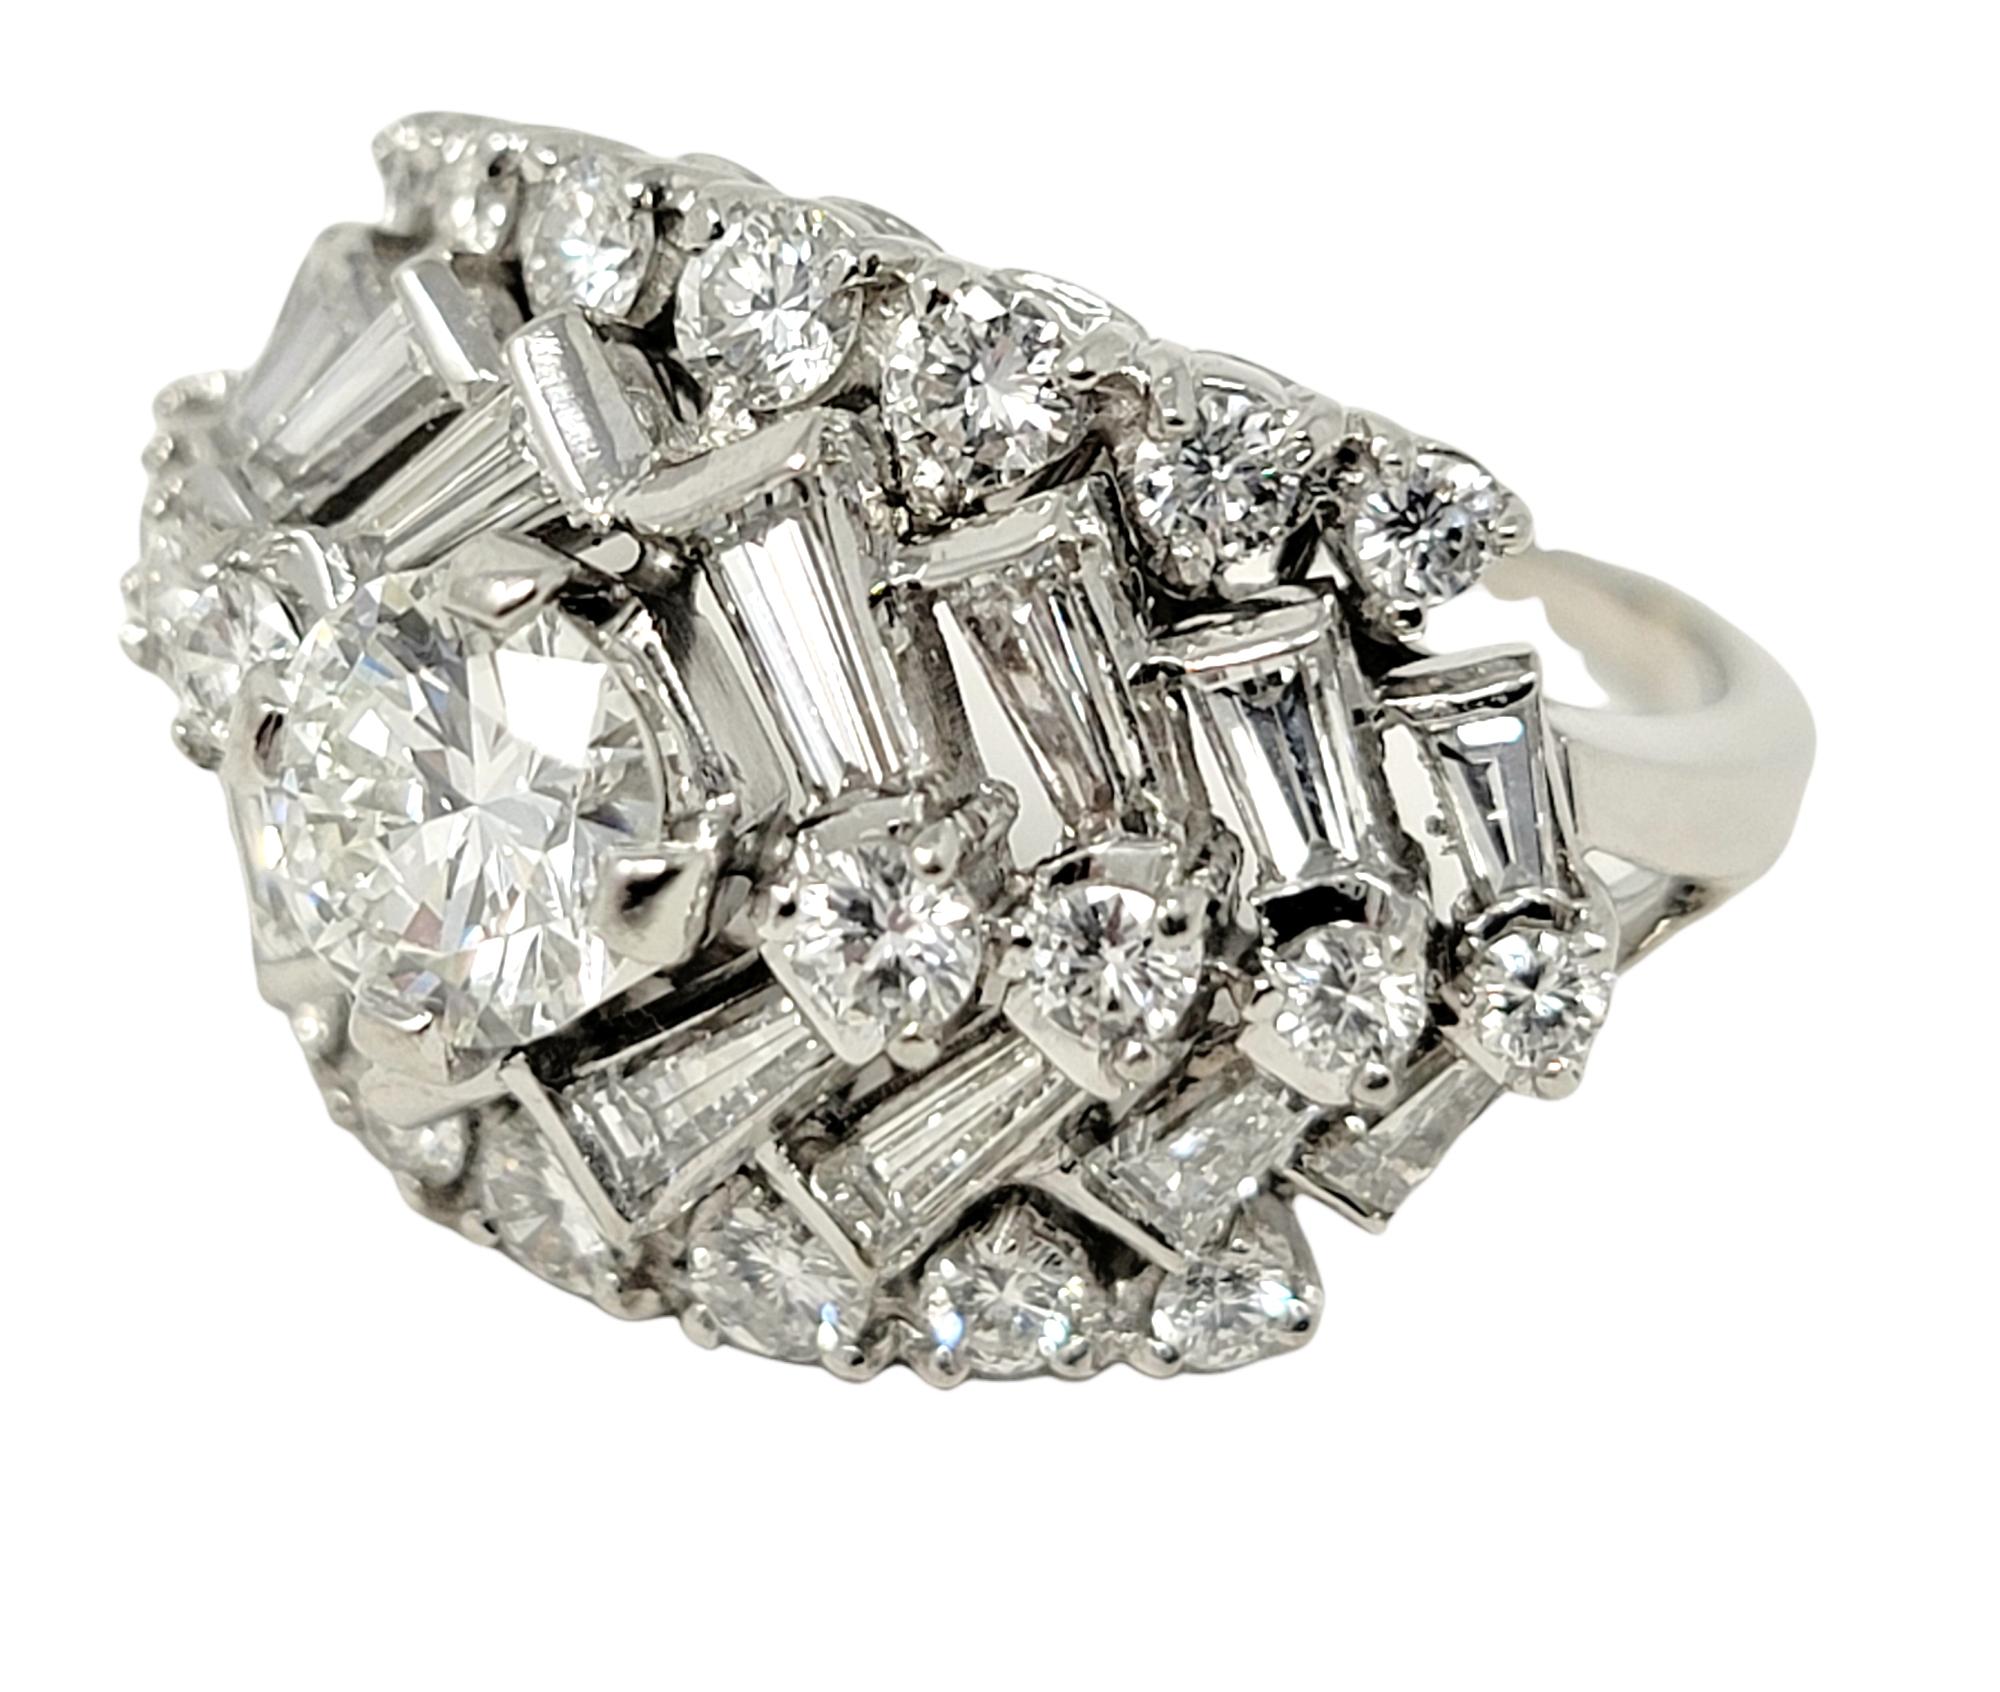 Ringgröße: 7

Dieser atemberaubend funkelnde Diamantring mit Chevron-Muster wird Ihnen den Atem rauben. Ein unglaublicher, eisweißer, runder Brillant von 0,75 Karat in der Mitte ist von einer Reihe gestapelter Baguette- und runder Diamanten umgeben,